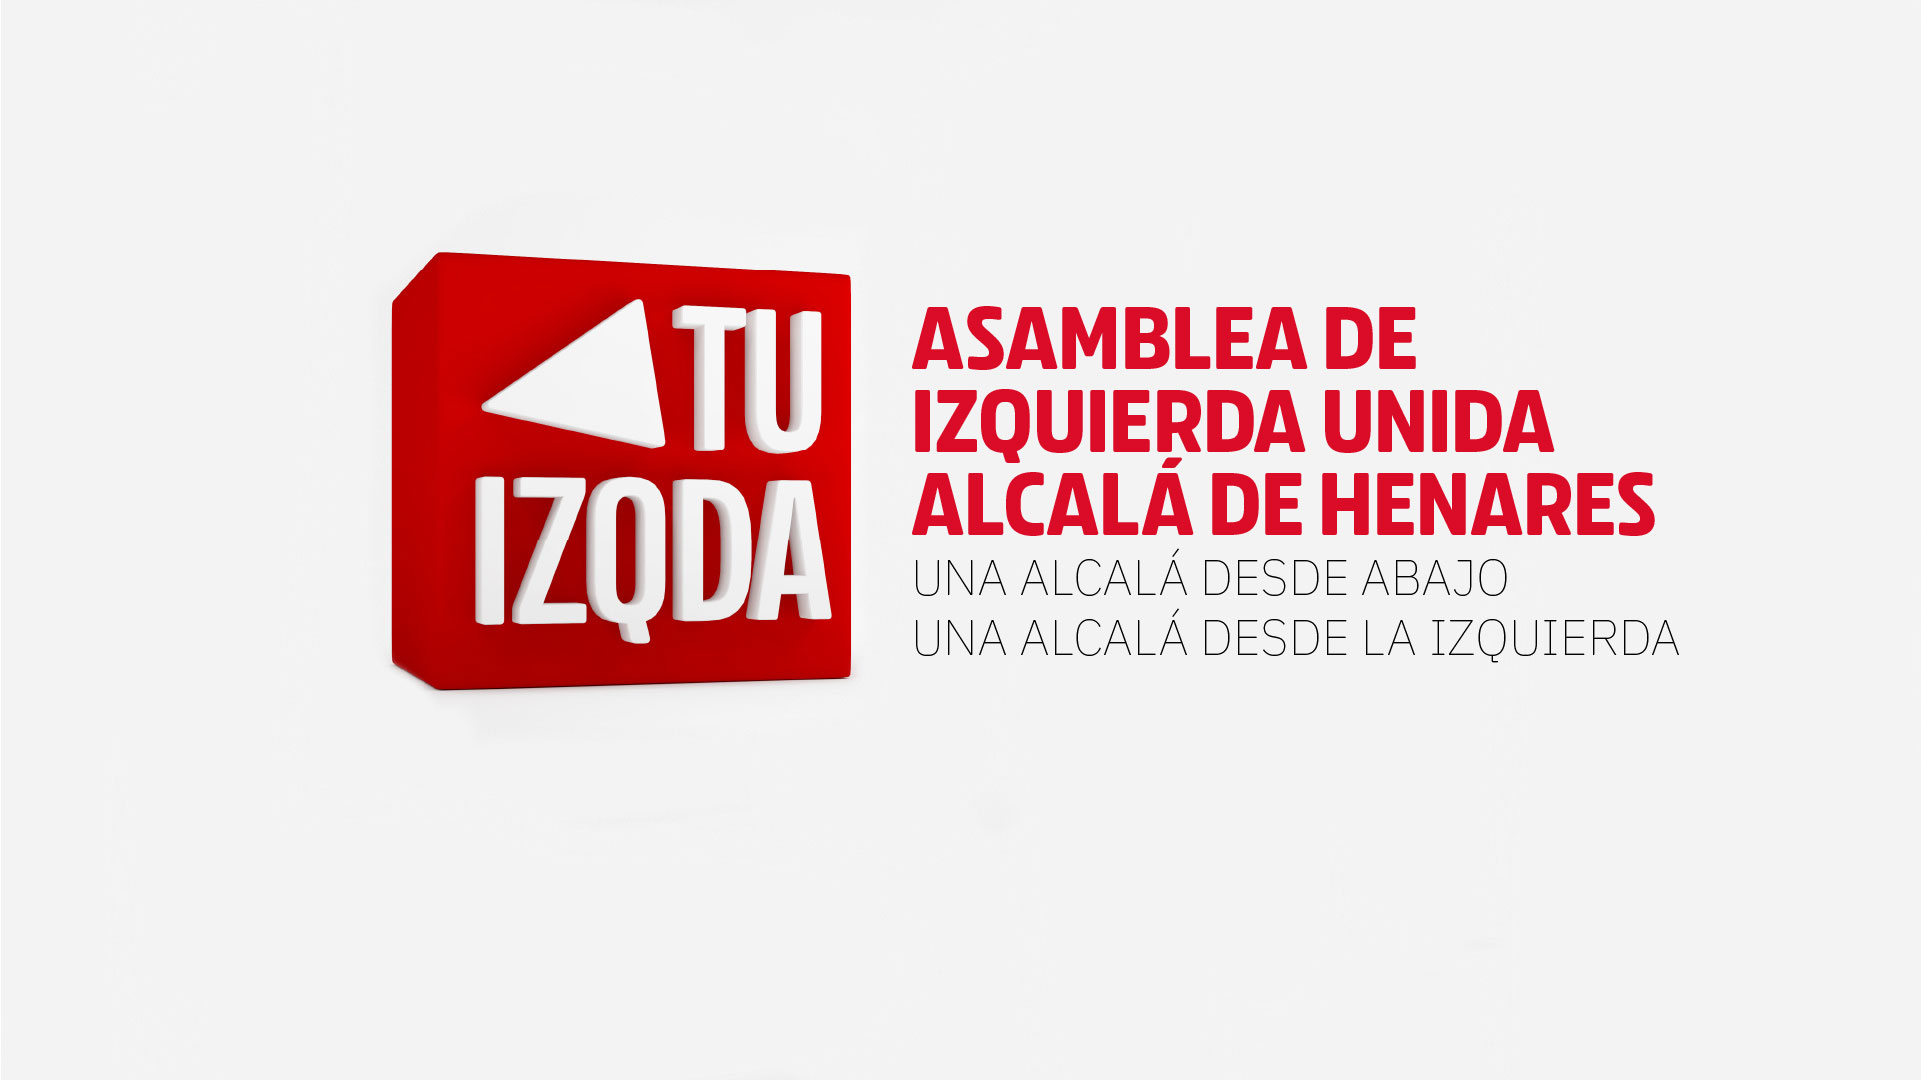 Asamblea de Izquierda Unida Alcalá de Henares